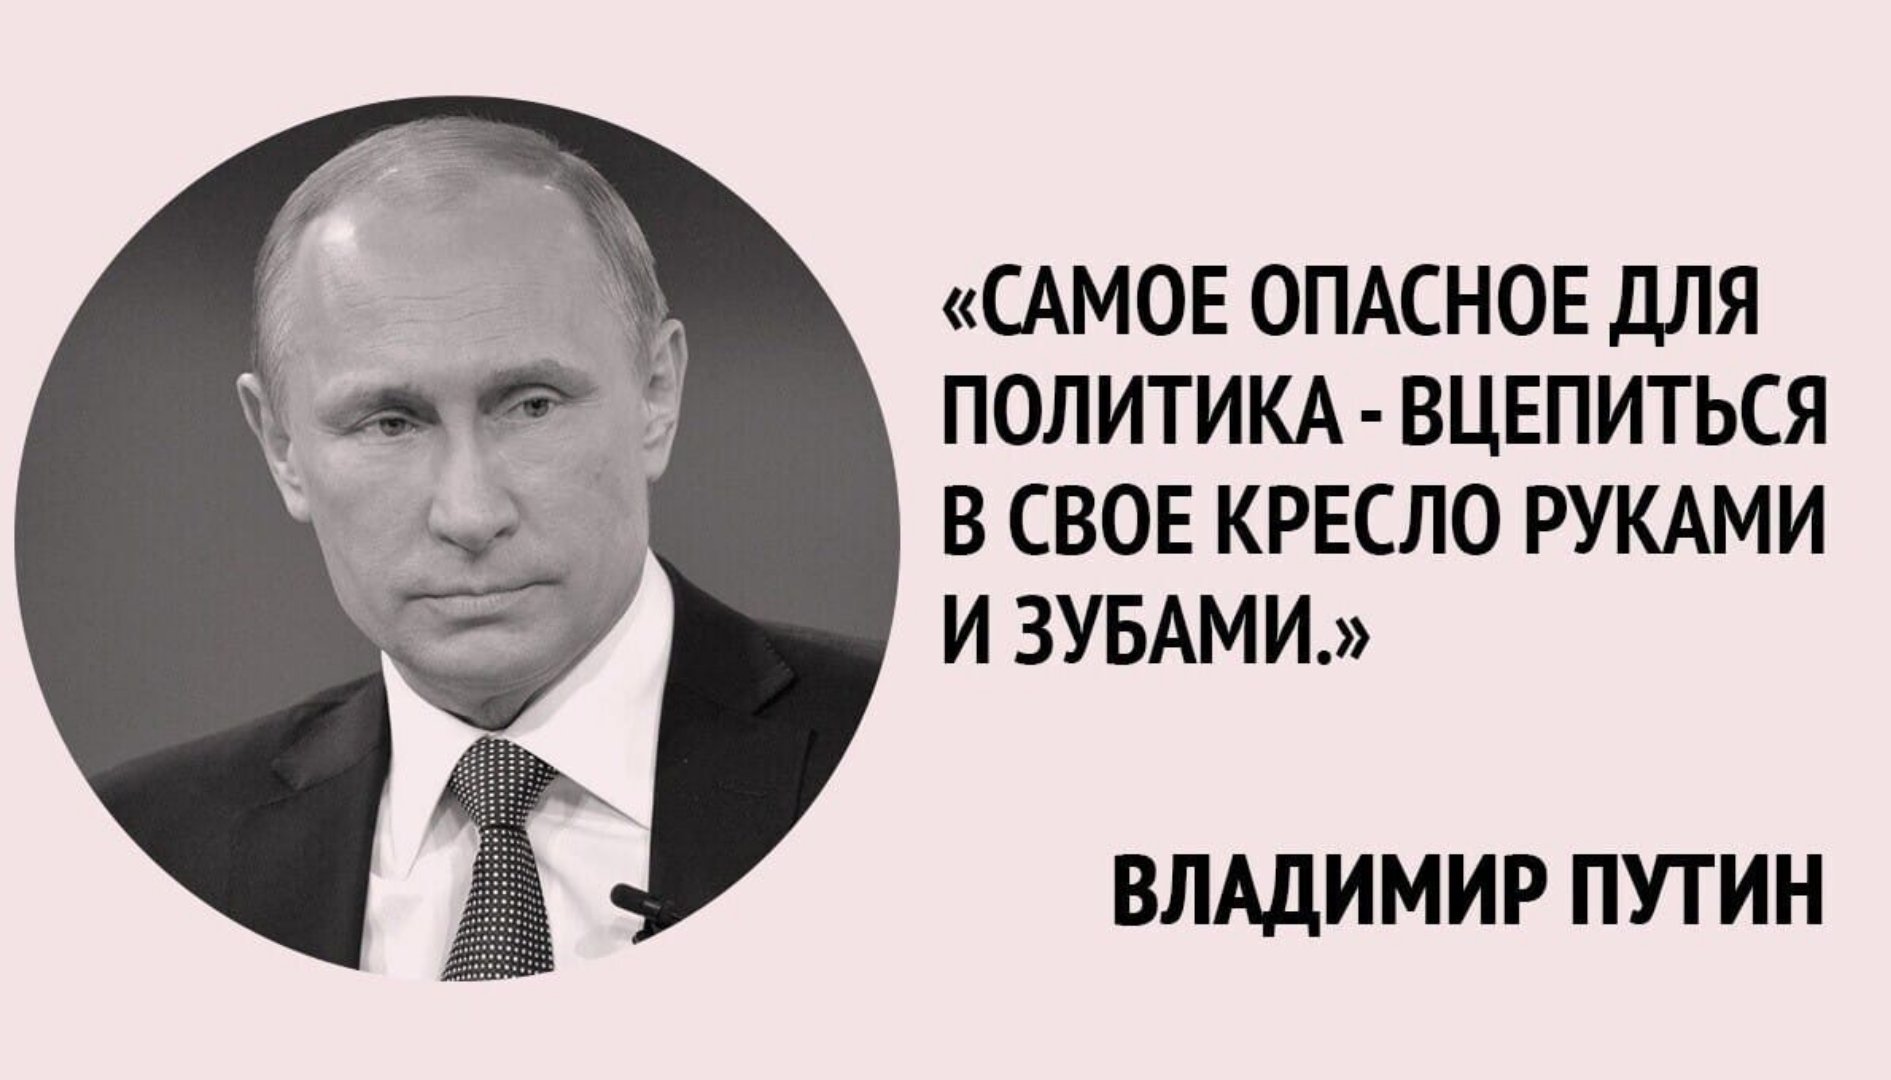 Политик который всегда. Высказывания политиков. Цитата Путина про власть. Цитаты политиков. Смешные высказывания политиков.